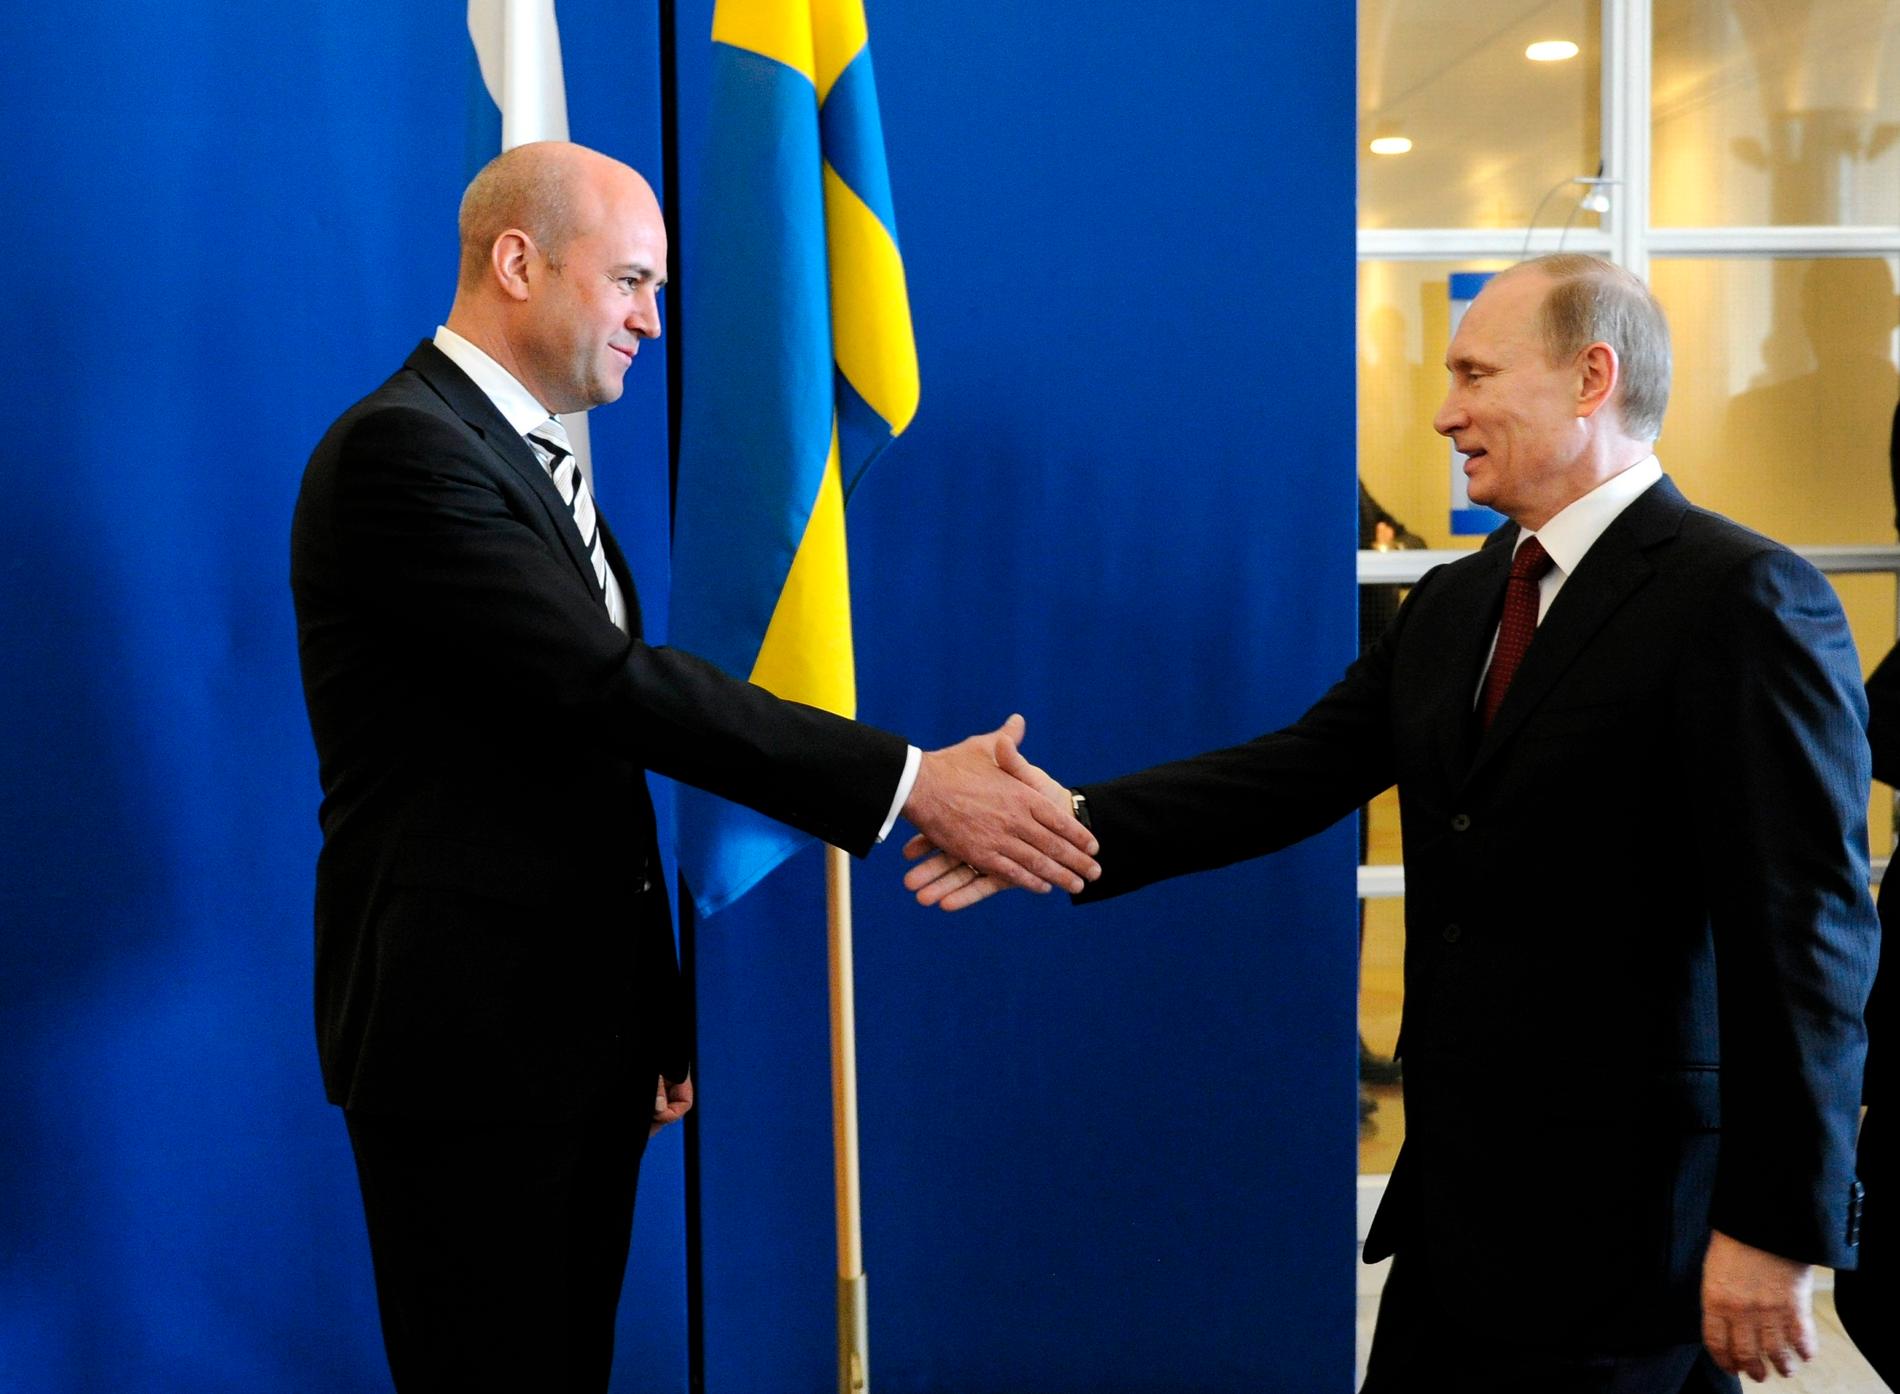 Glada miner mellan Rysslands premiärminister Vladimir Putin och statsminister Fredrik Reinfeldt på Rosenbad 2011.